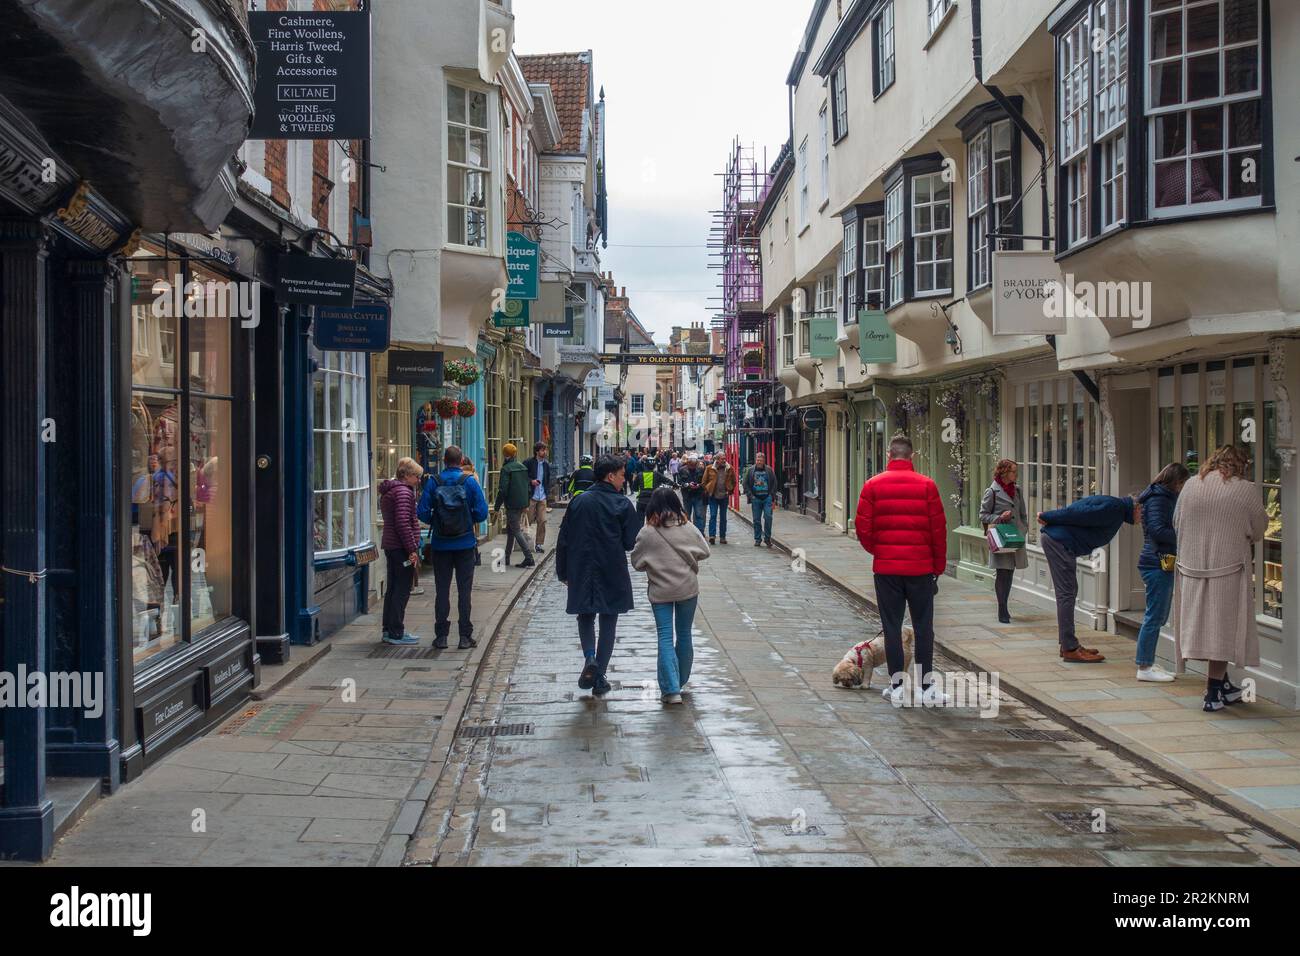 Geschäfte, Cafés und Restaurants am Stonegate in York, North Yorkshire, England, Großbritannien Stockfoto